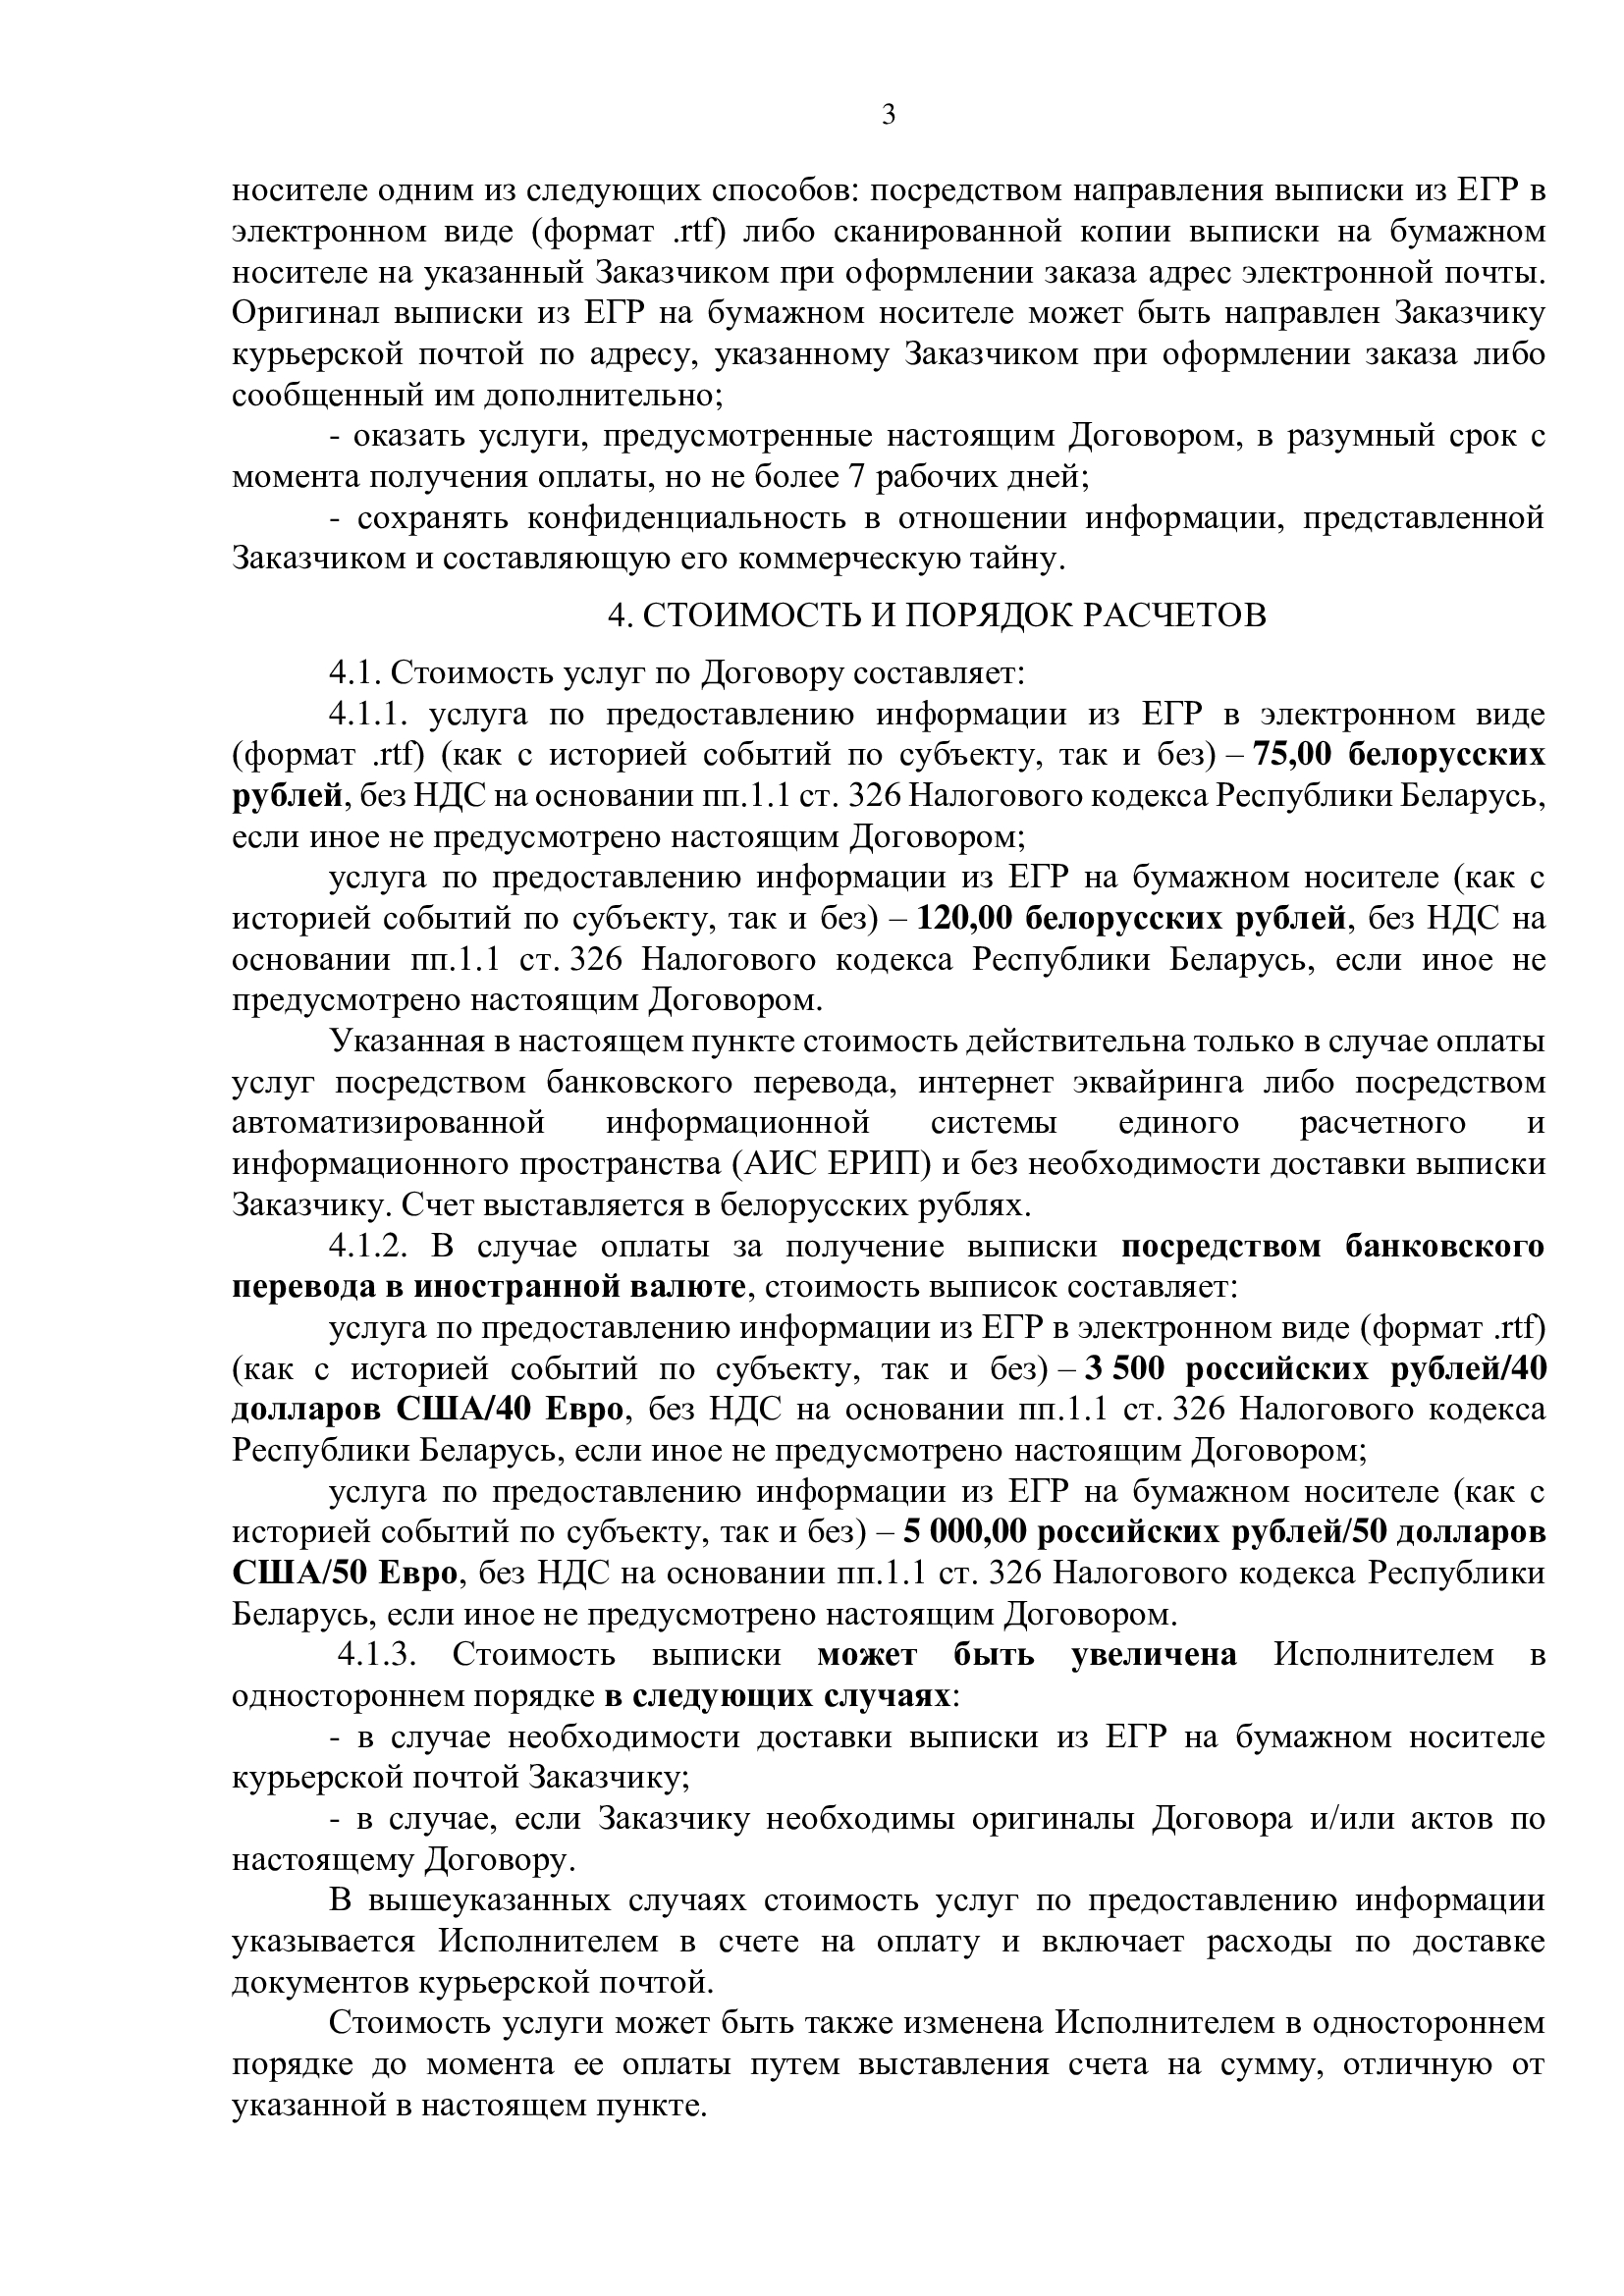 Публичный договор на заказ выписки из ЕГРЮЛ РБ 3